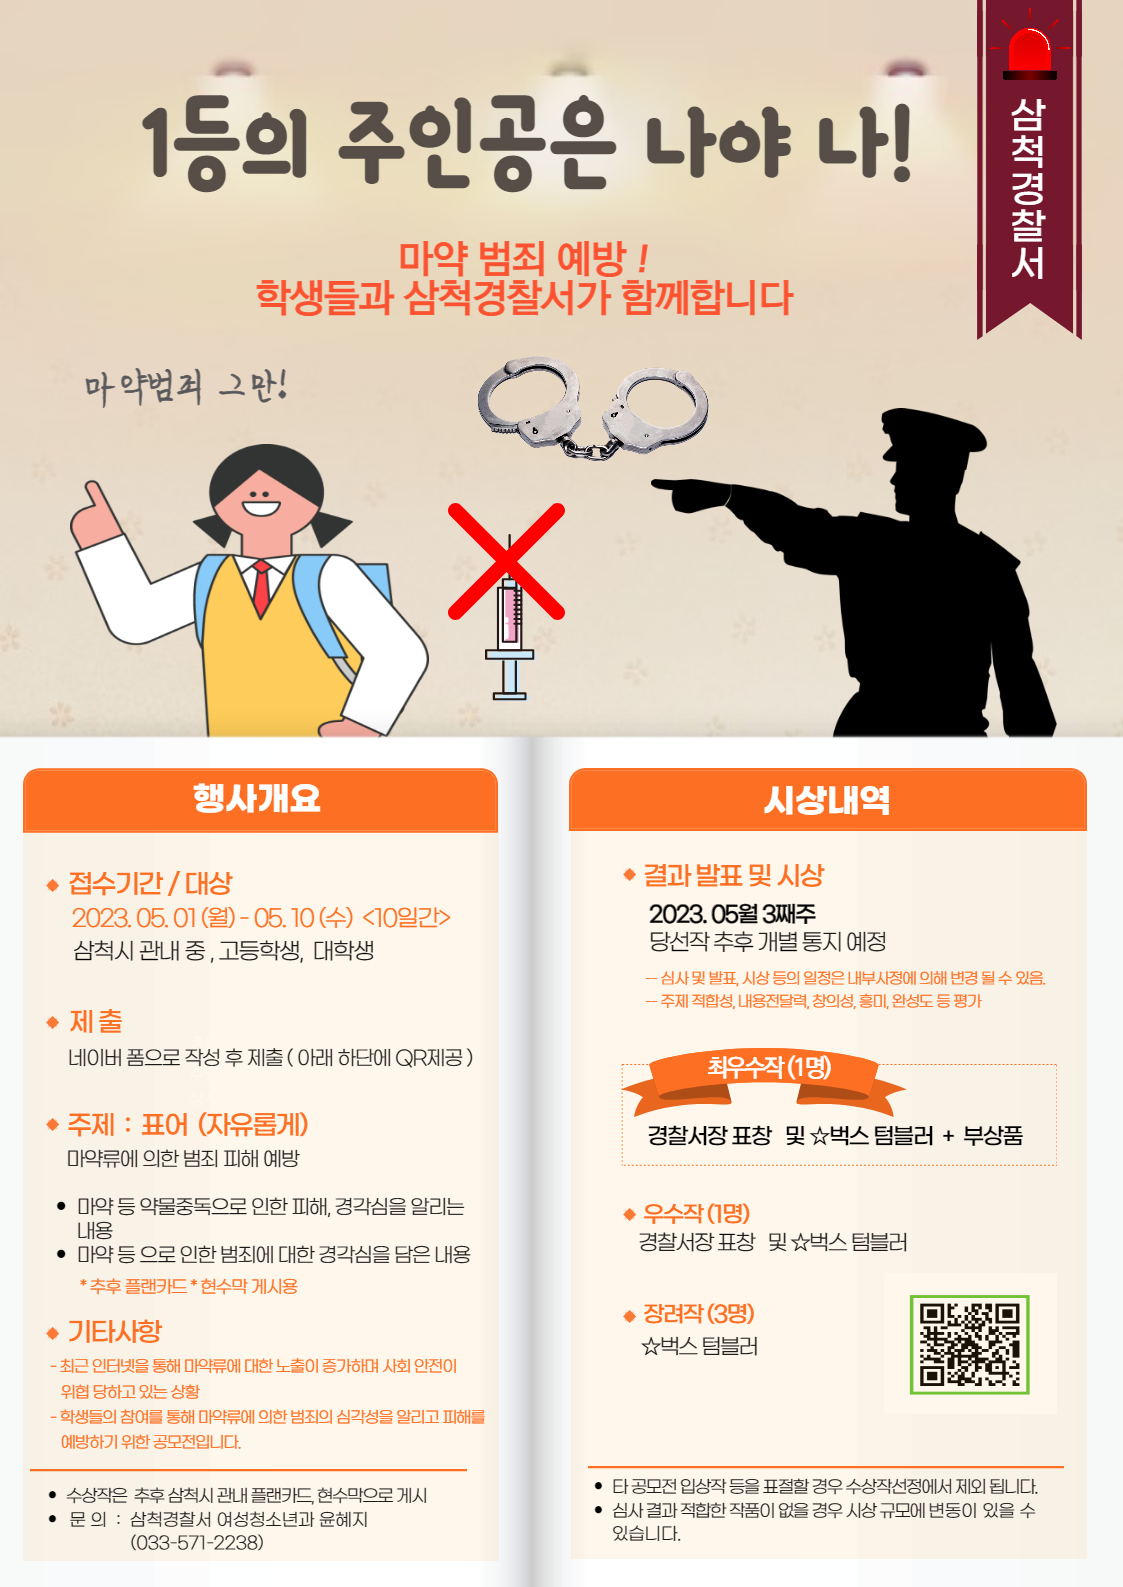 마약 범죄 예방 표어공모전 개최-마약범죄 예방 공모전 포스터 (삼척경찰서)